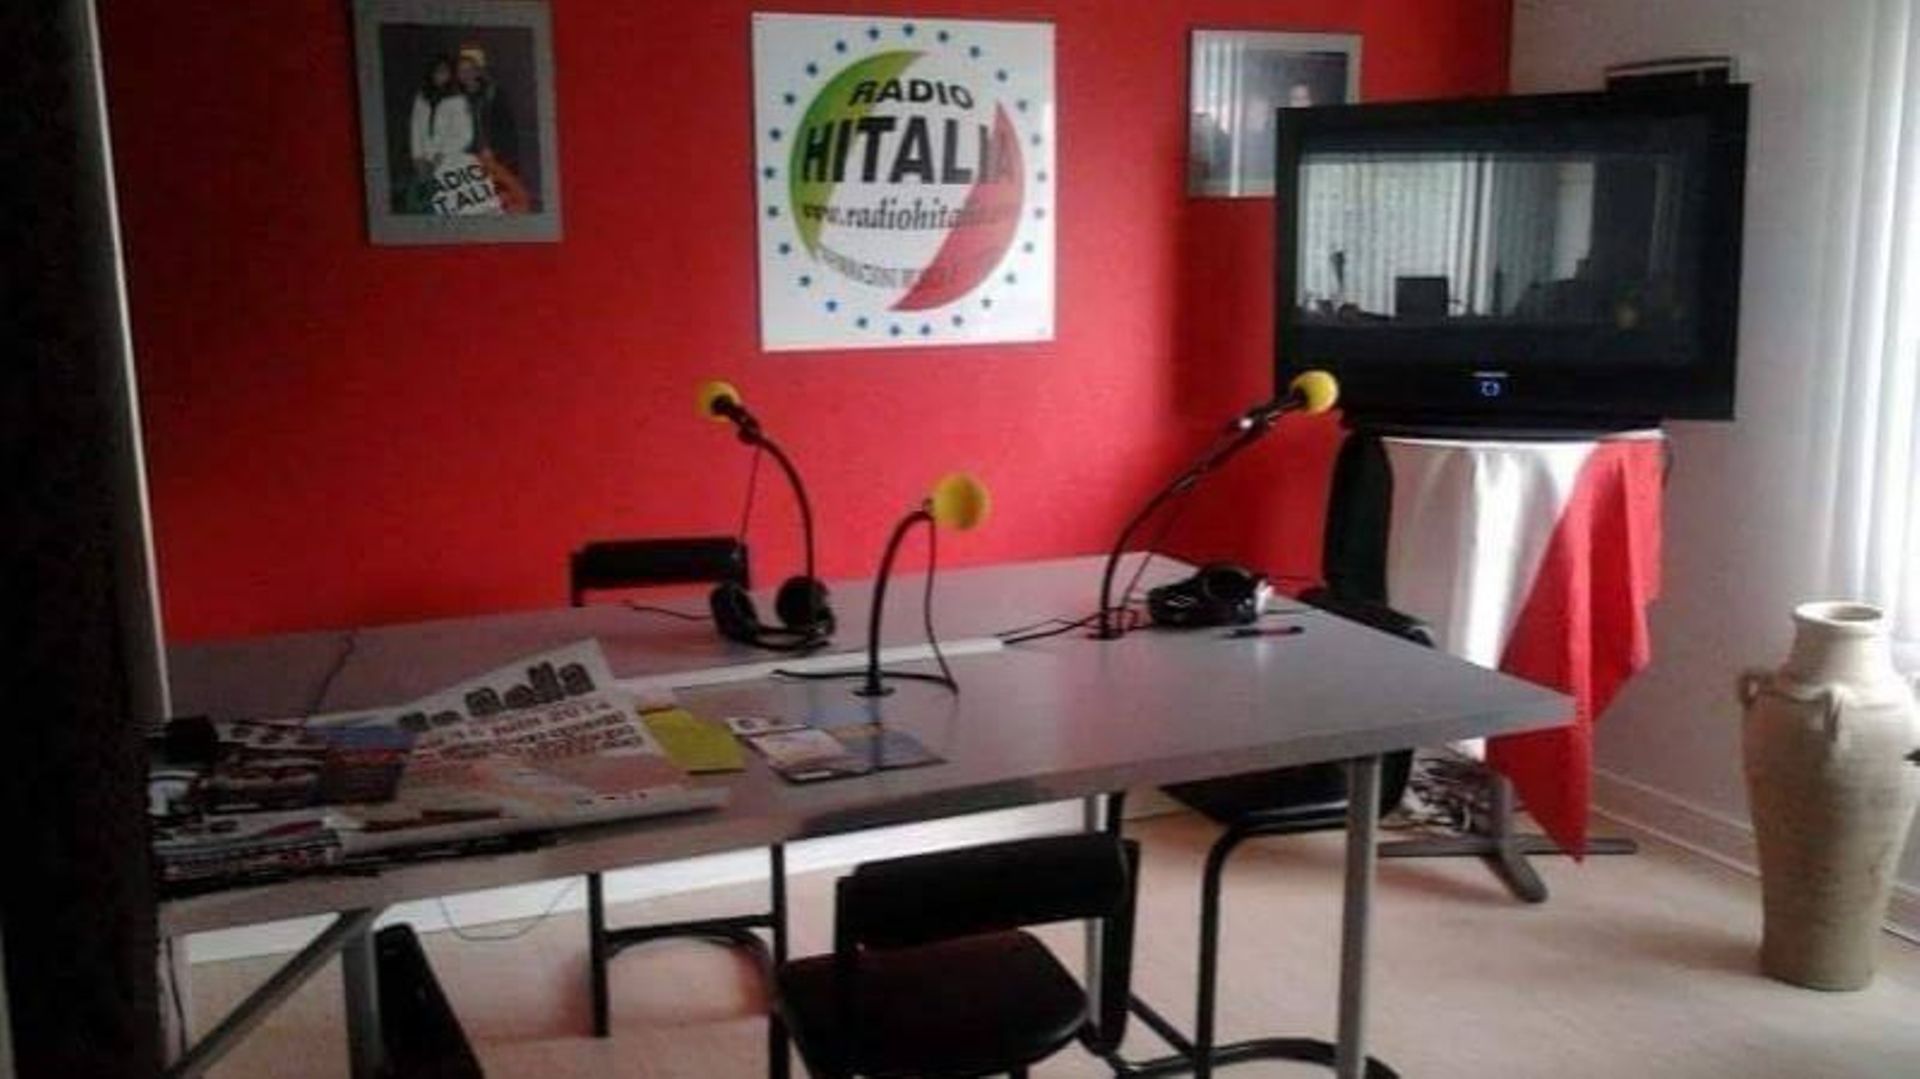 RadioHitalia pour célébrer en italien le Jeudi Saint